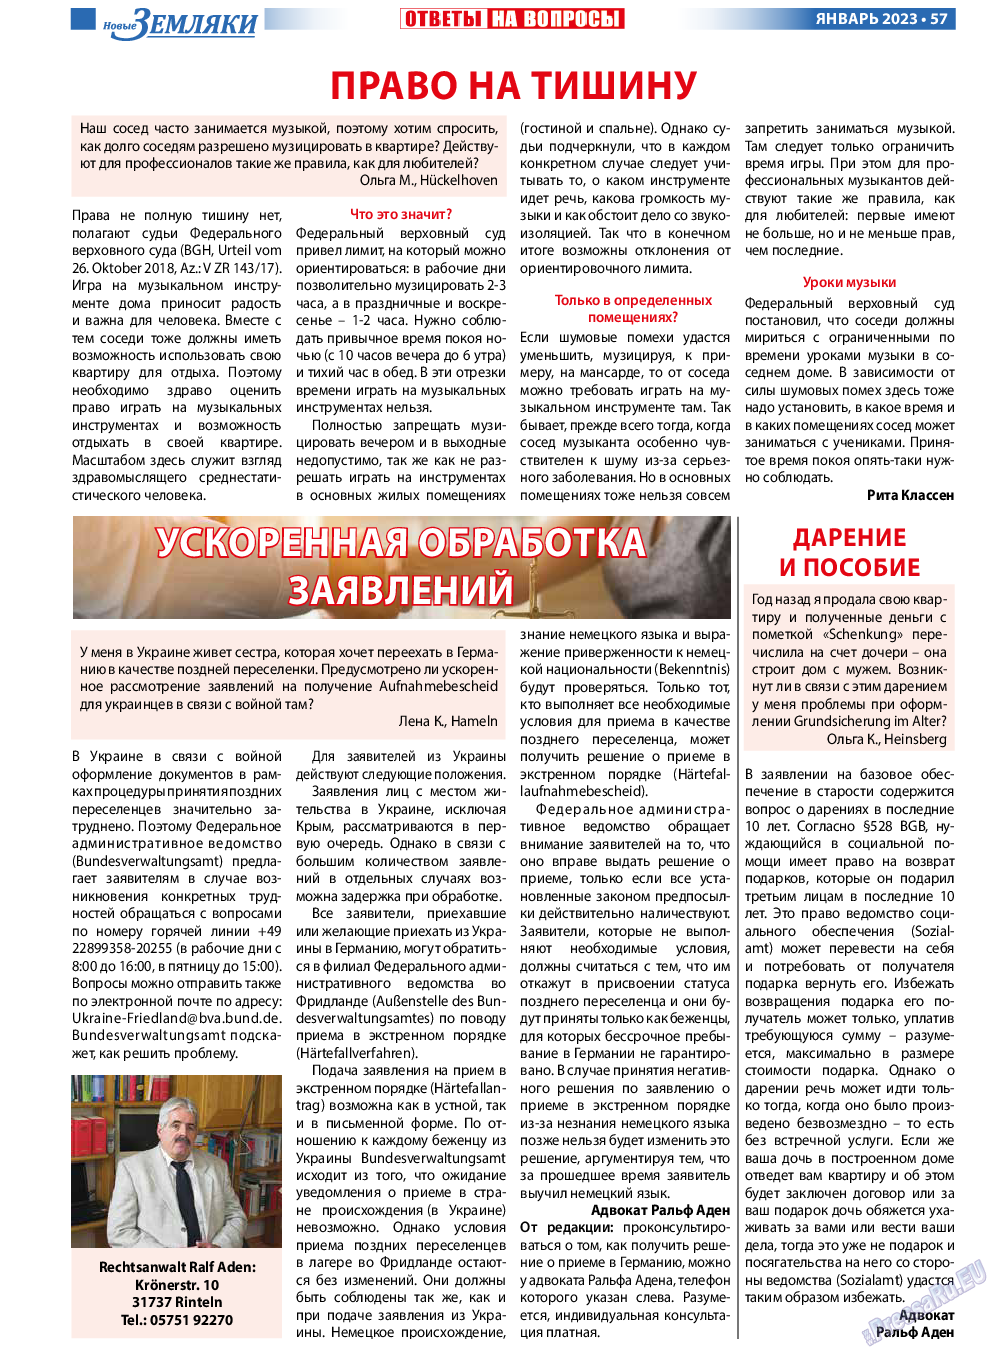 Новые Земляки, газета. 2023 №1 стр.57